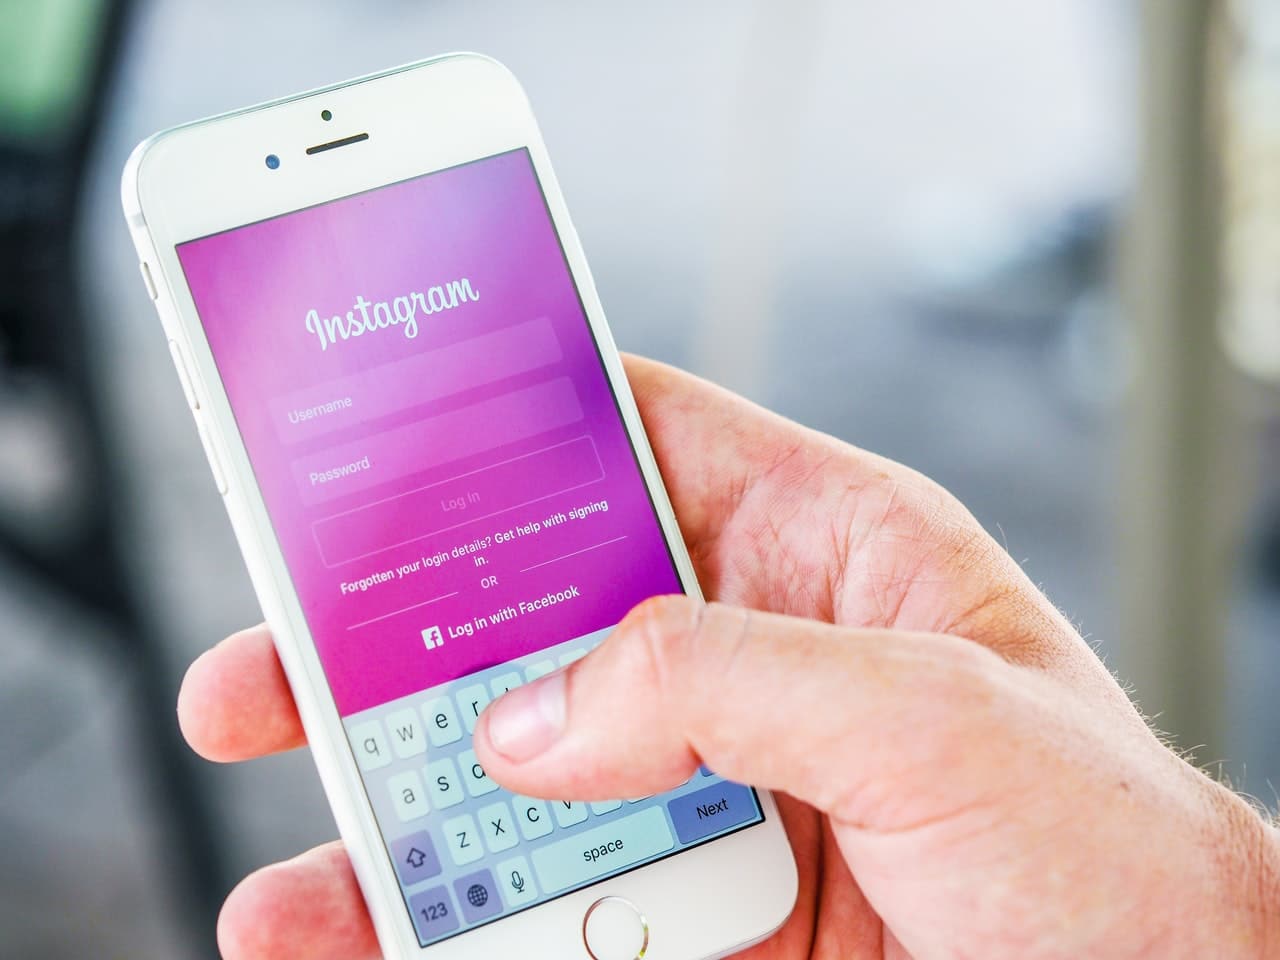 4 Instagram Marketing Tips For 2019